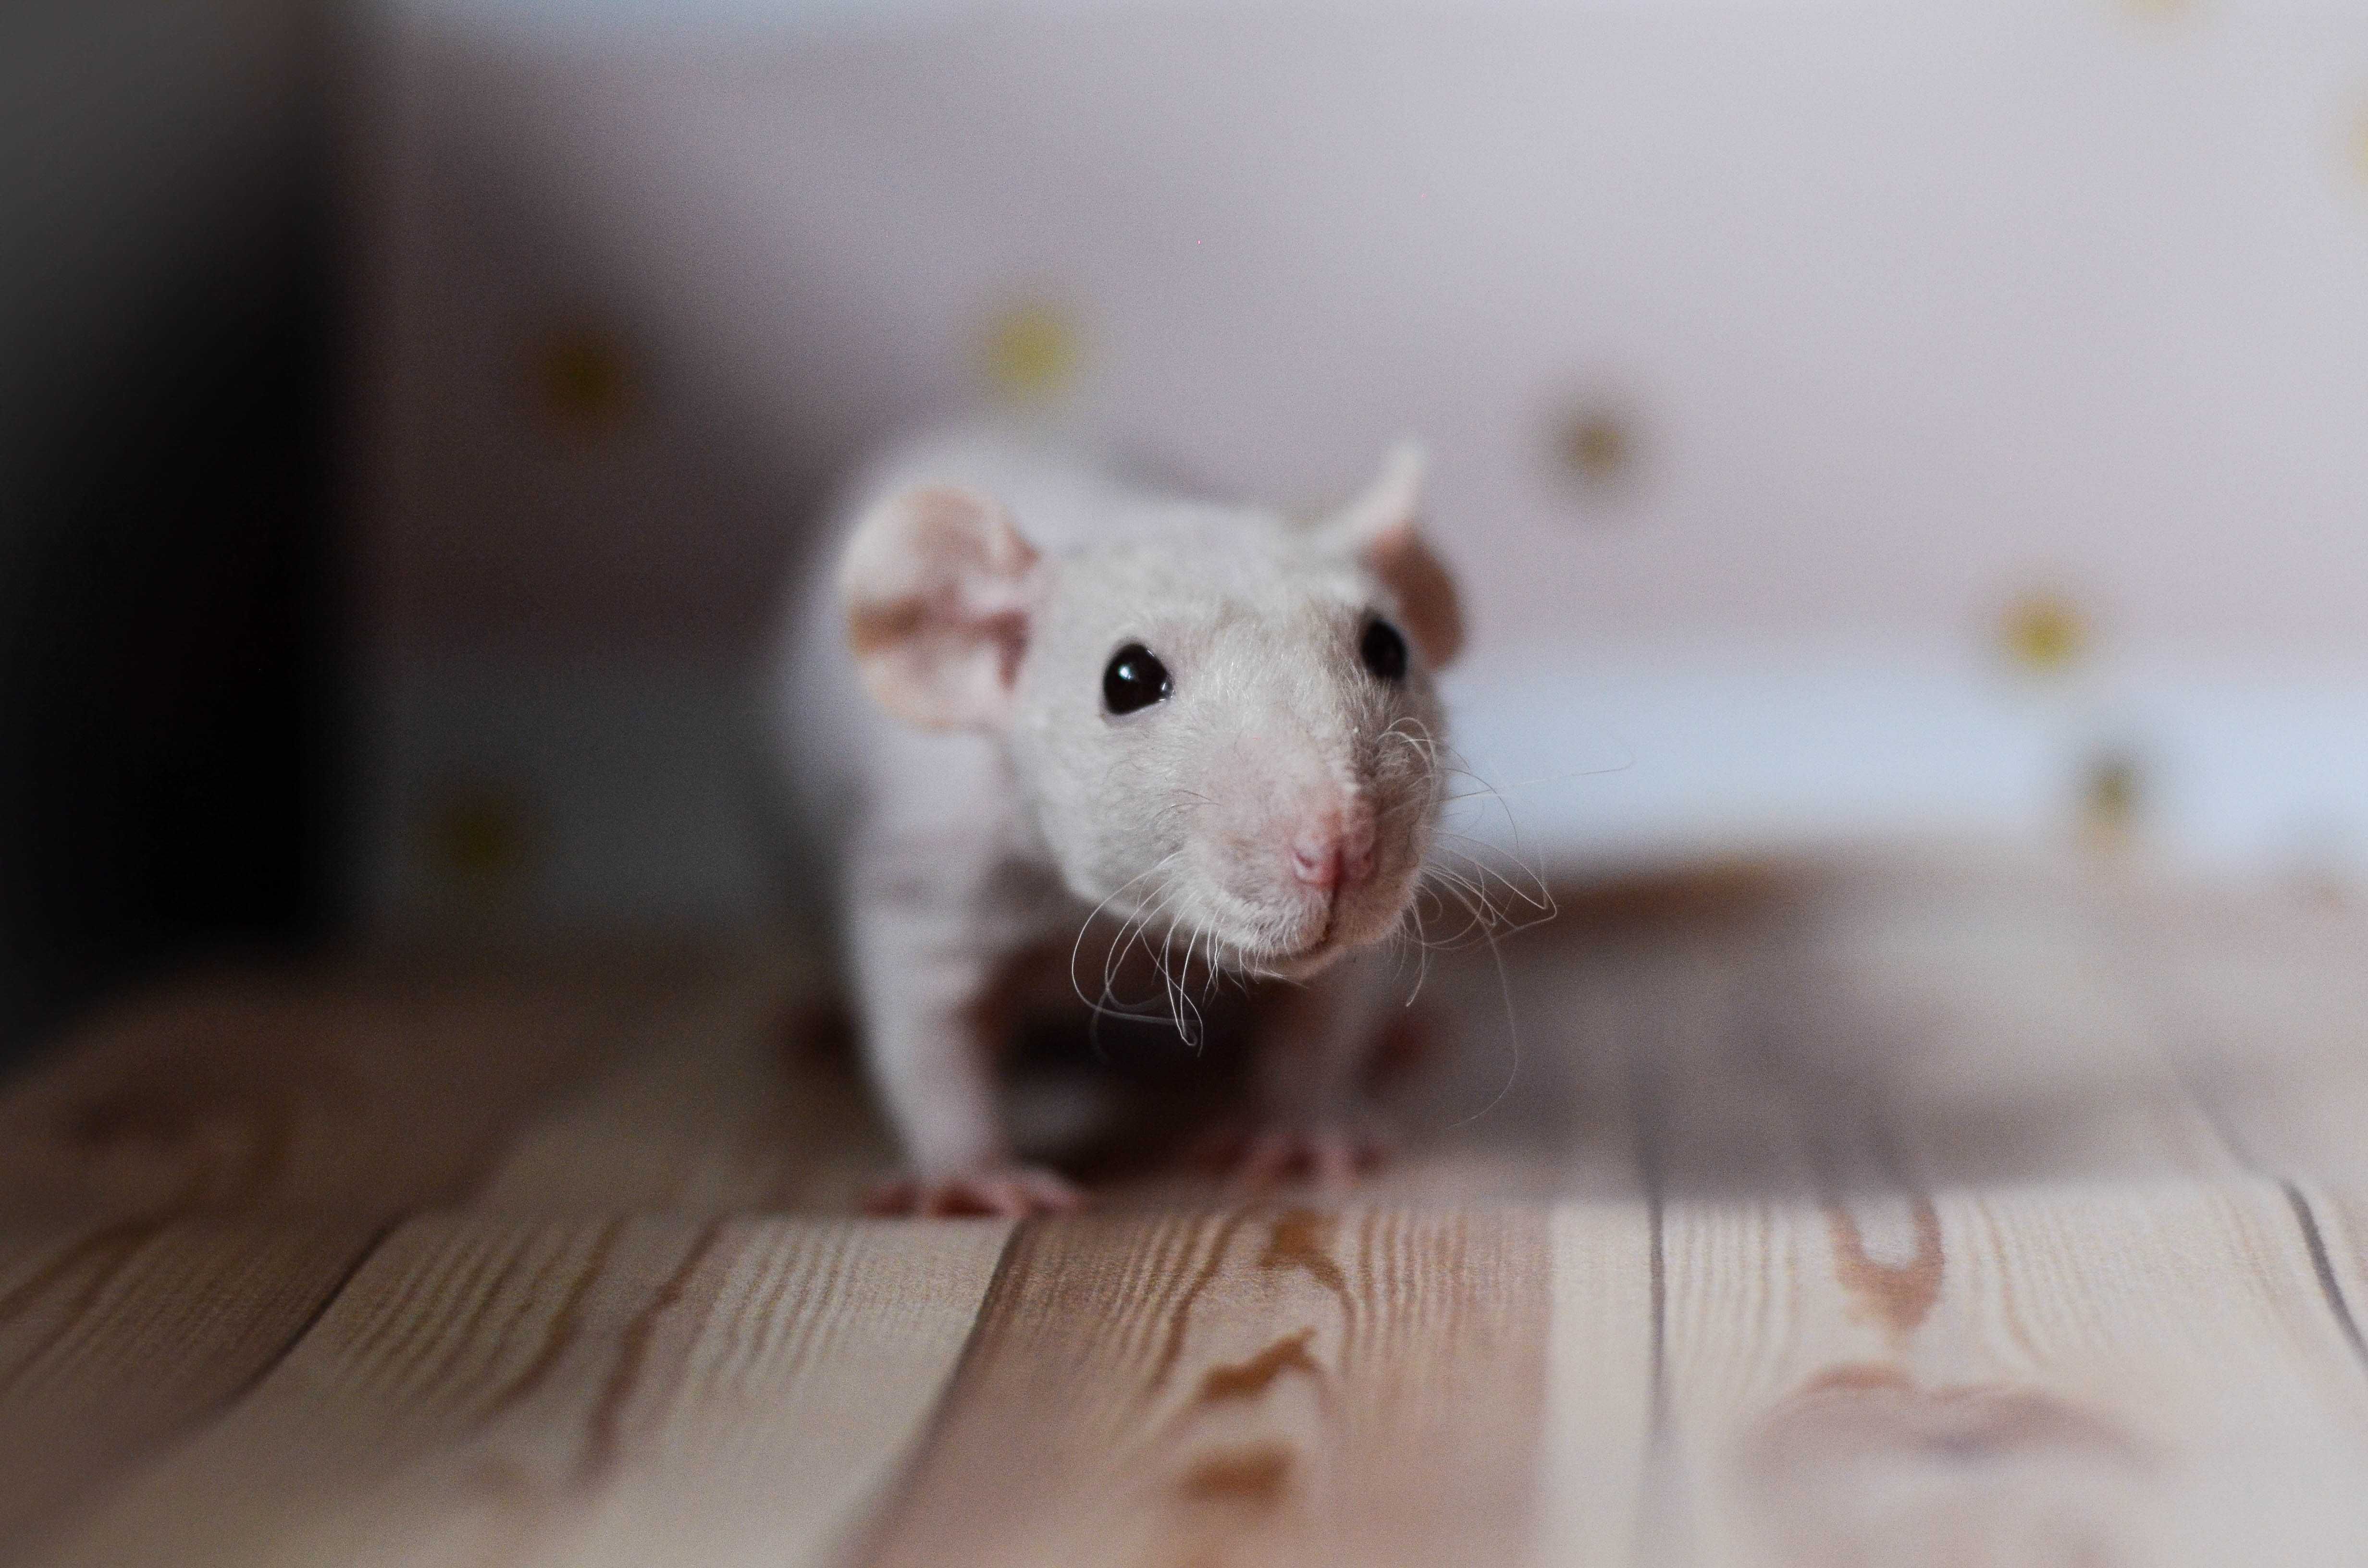 дуже гарні пацюки різновиду фазз-лисі